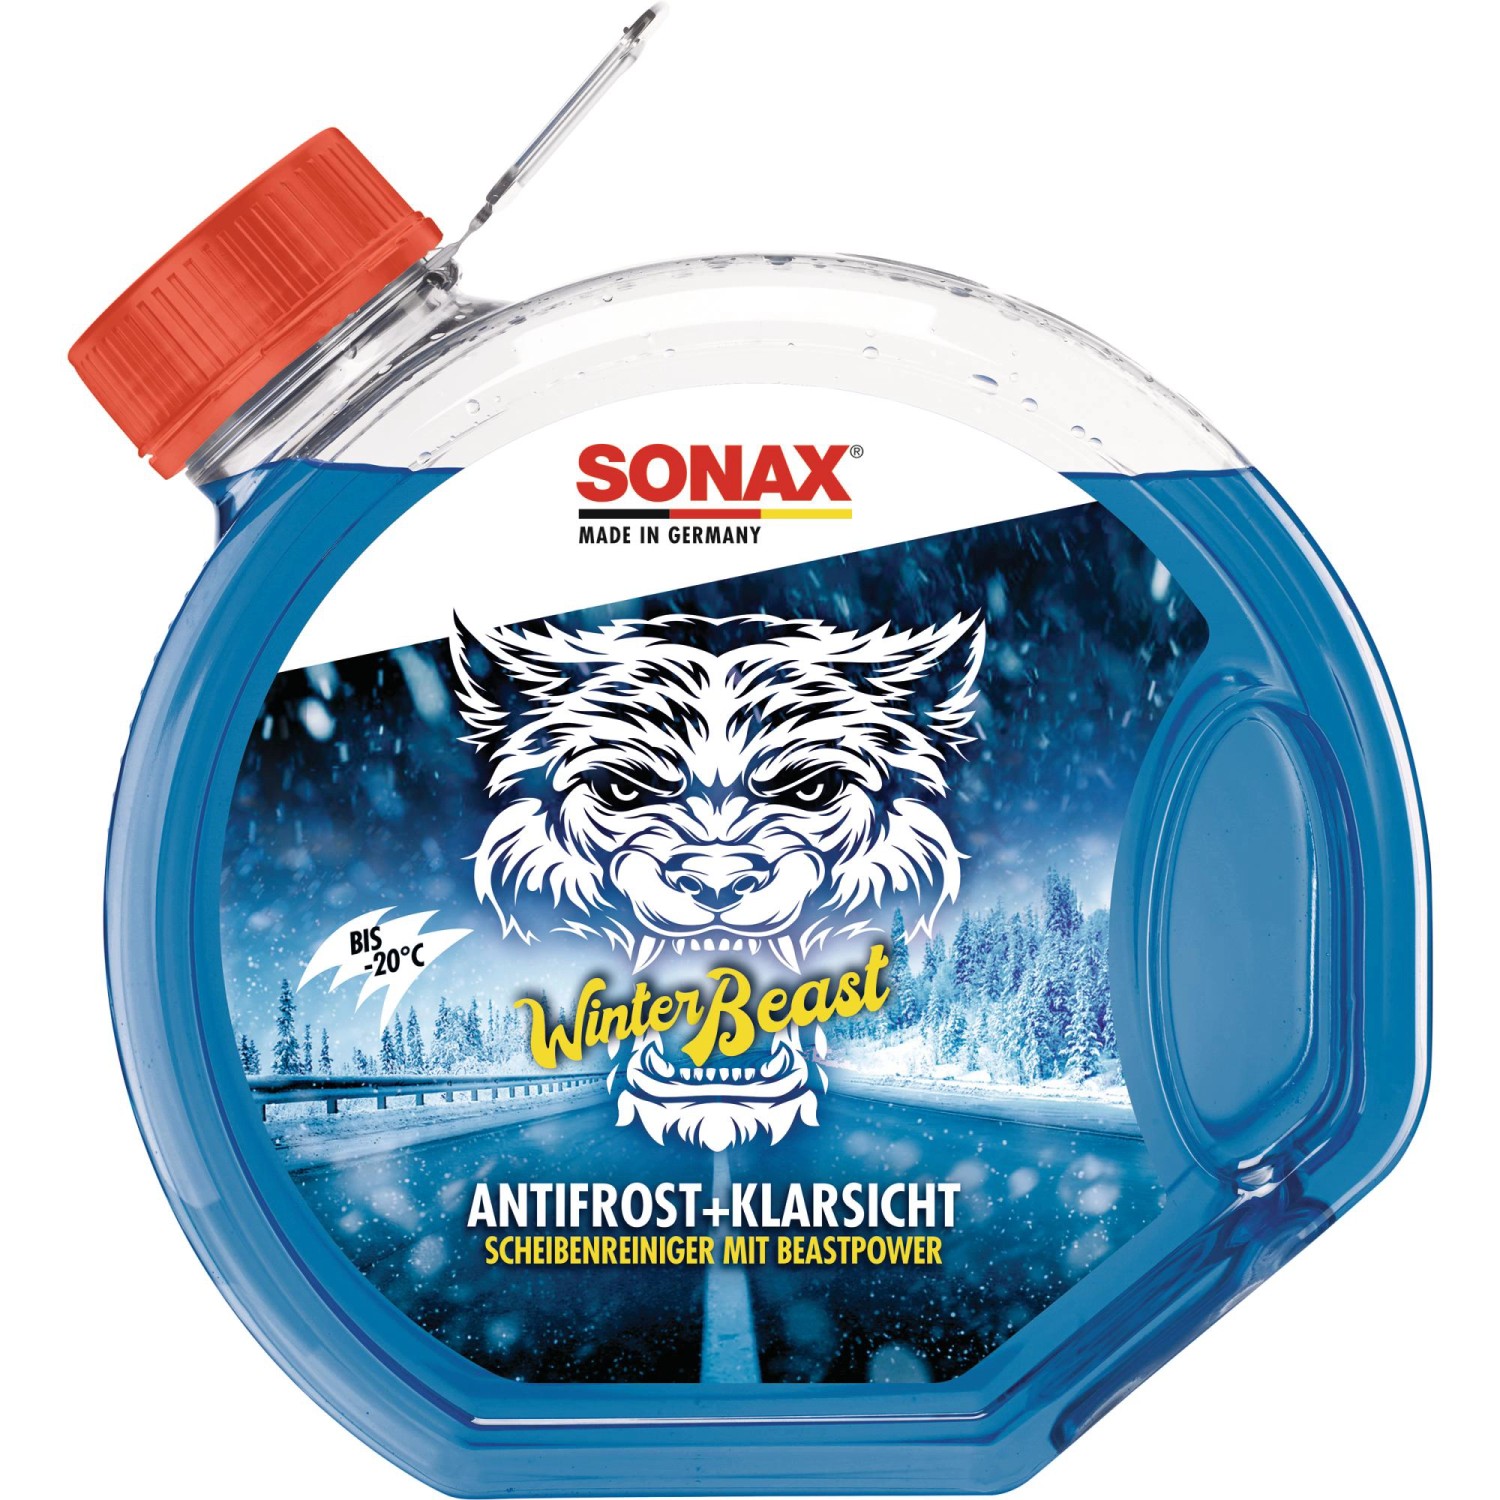 Sonax Scheibenreiniger Antifrost + Klarsicht bis -30°C Konzentrat